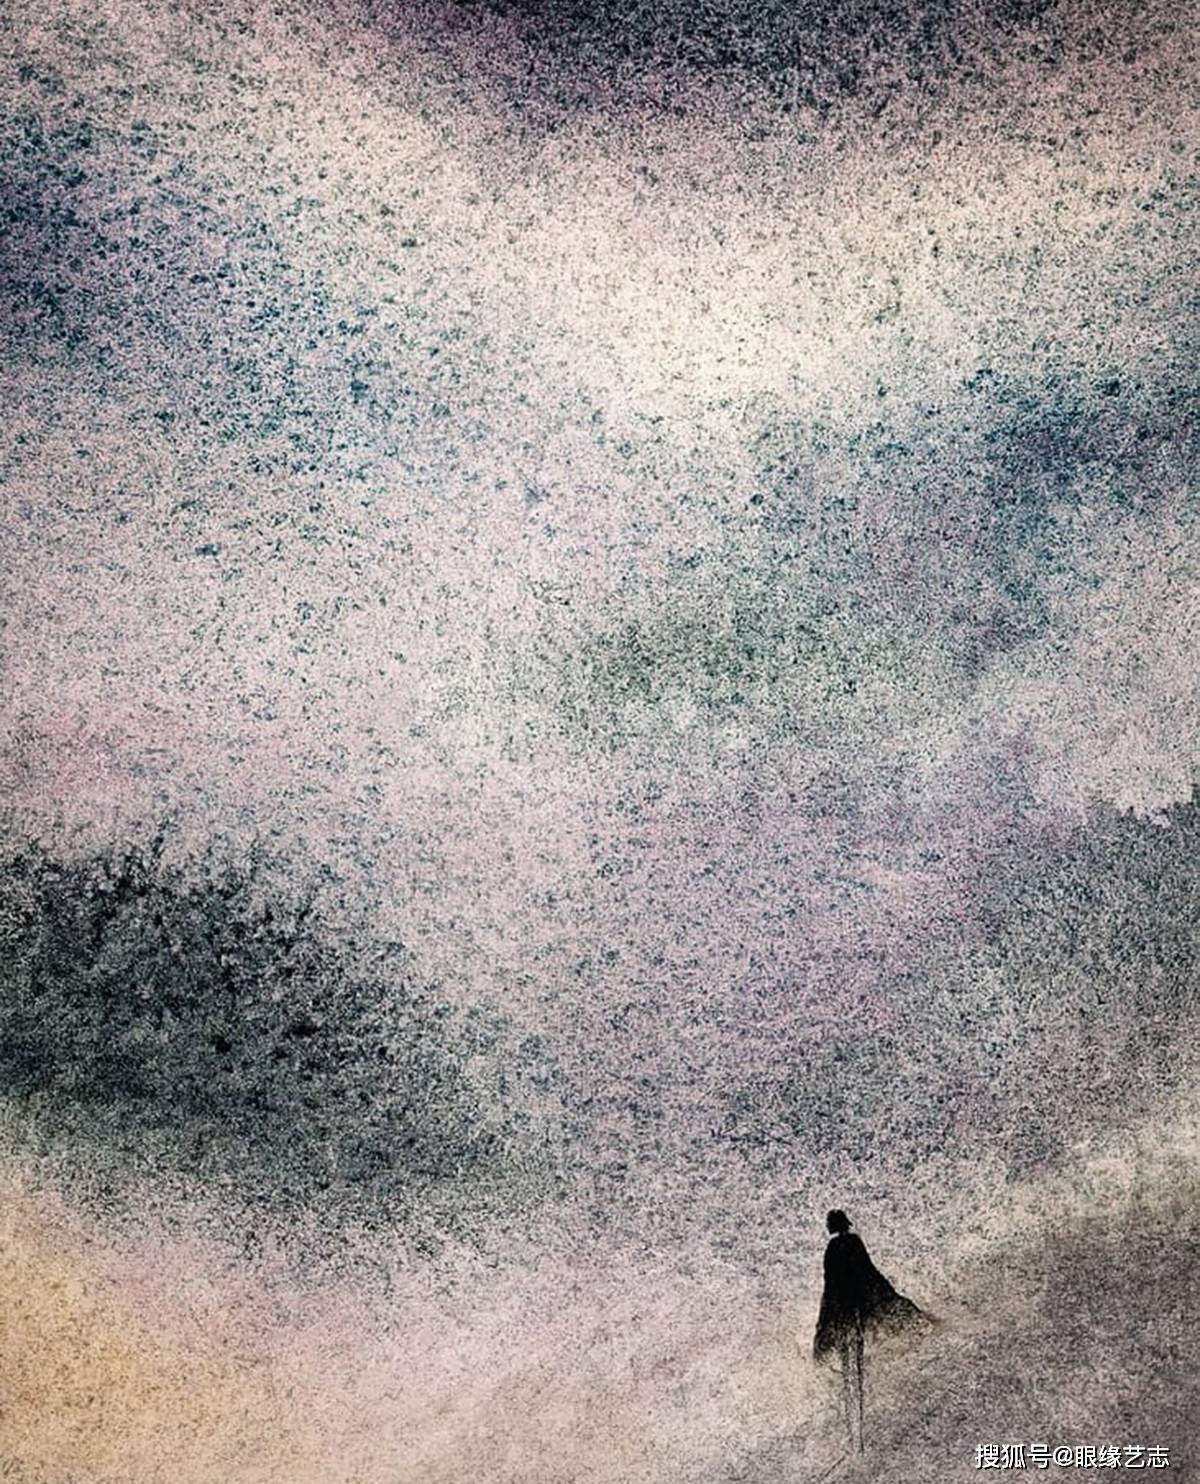 地球色素猎人:抽象的颗粒残影,风景画中的浩瀚与渺小